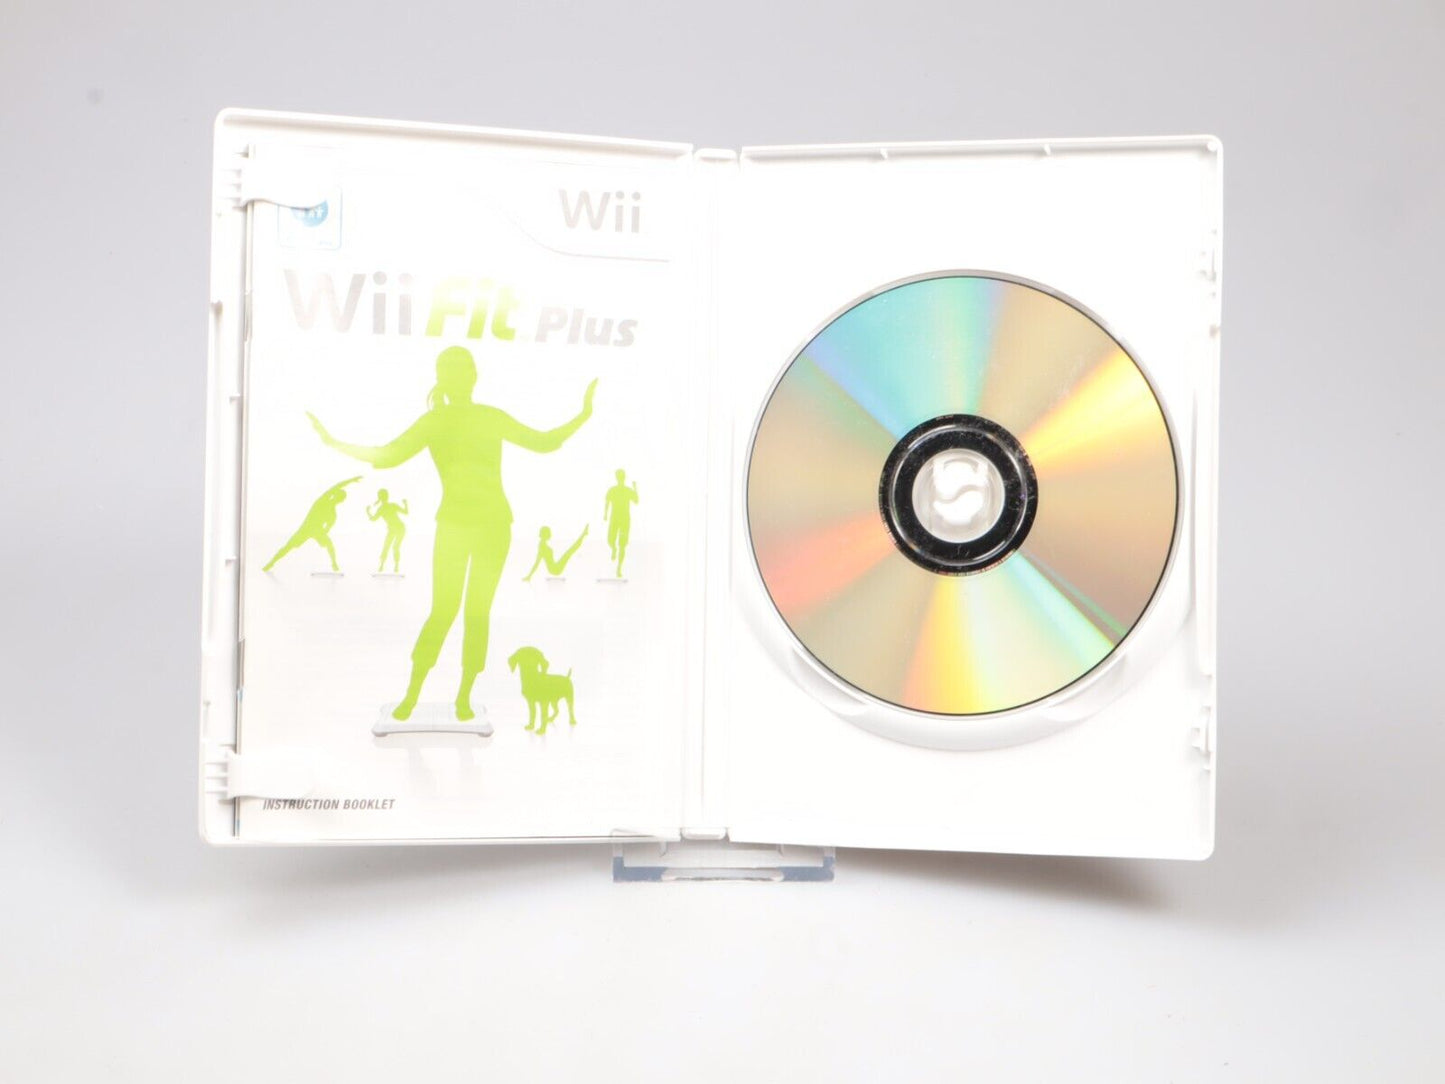 Wii Balance Board Zwart | In doos RVL-021 | + Wii Fit-spel 